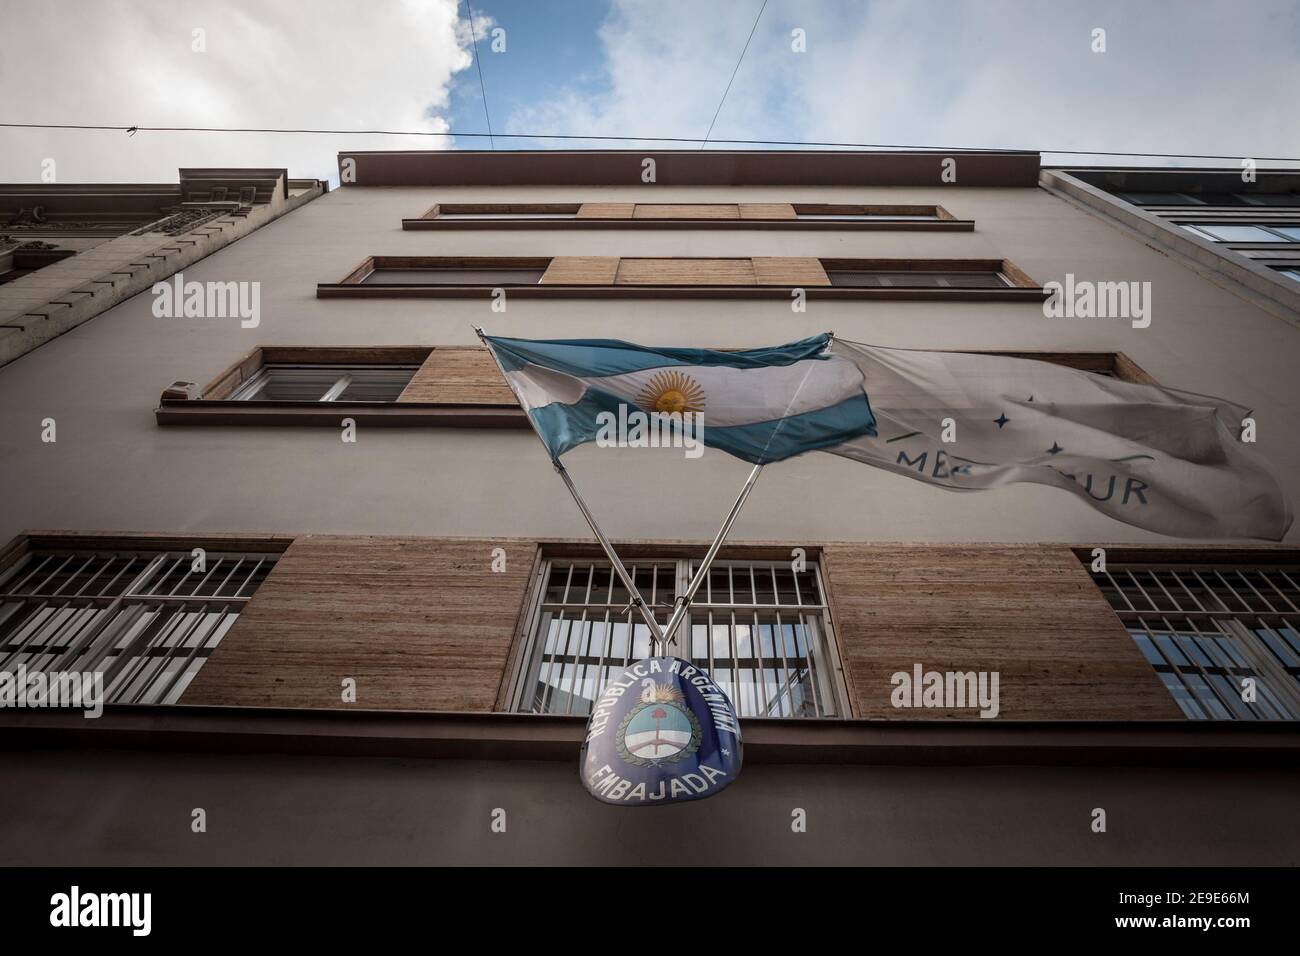 BELGRAD, SERBIEN - 8. JULI 2018: Zeichen der argentinischen Botschaft von Belgrad mit Flaggen von Argentinien und mercosur. Es ist offizielle diplomatische r Stockfoto